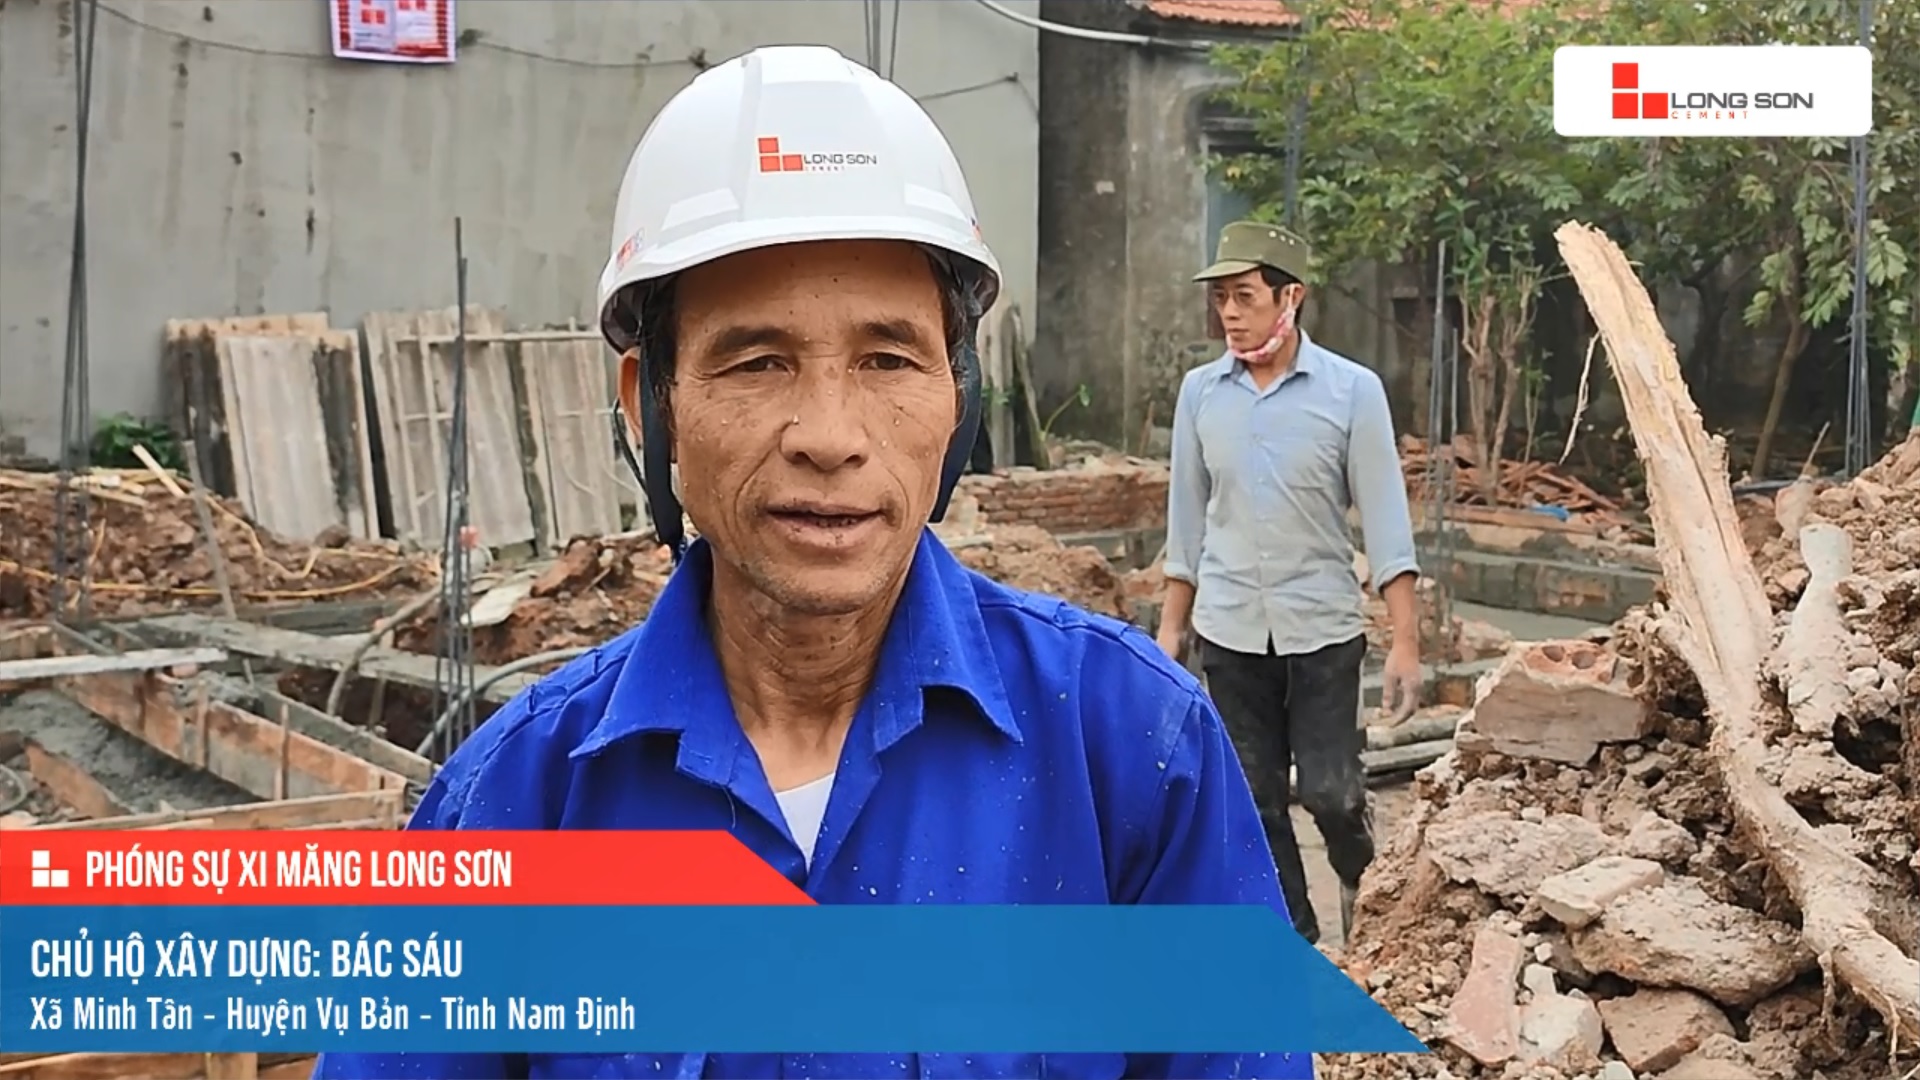 Phóng sự công trình sử dụng xi măng Long Sơn tại Nam Định ngày 17/11/2021